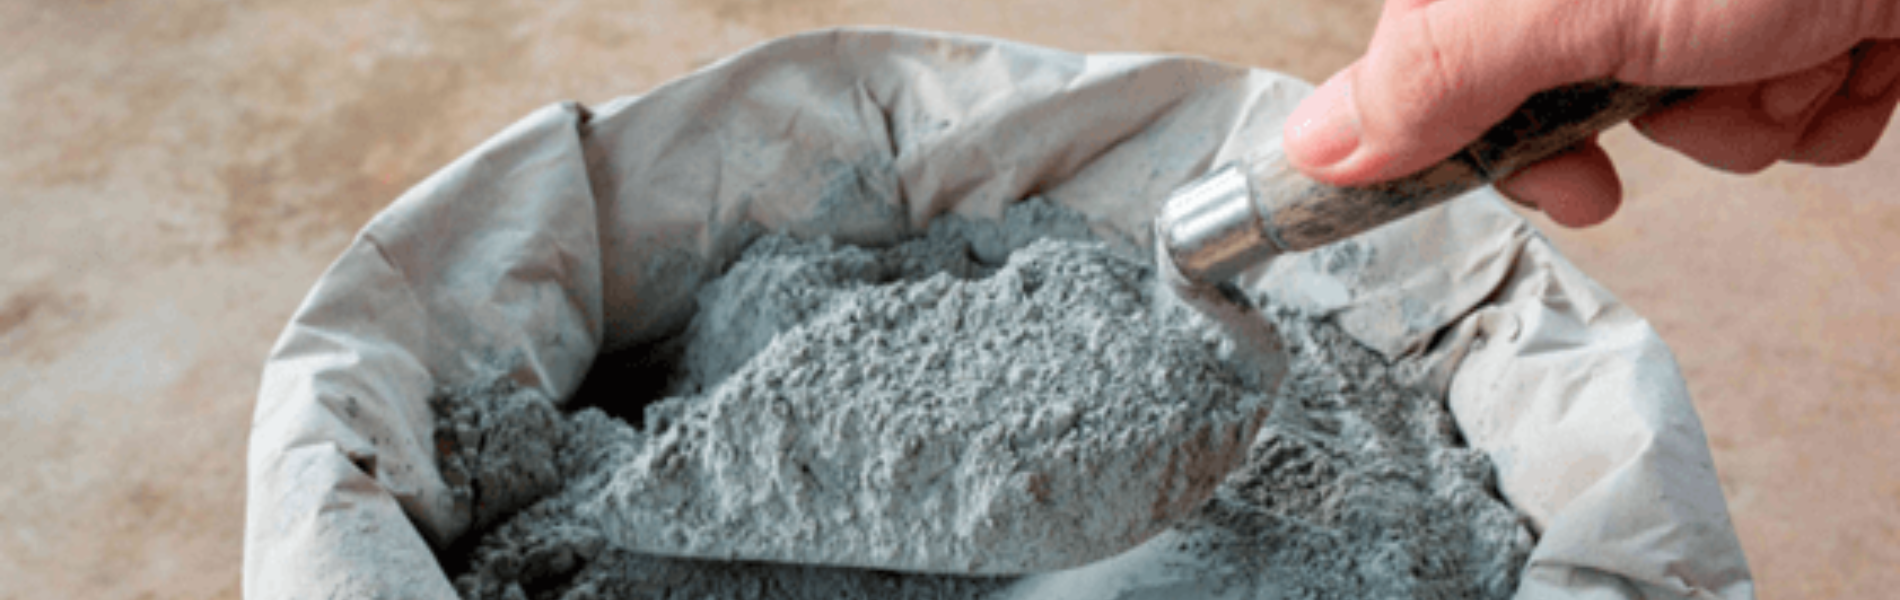 Foto de mão mexendo em saco de cimento com uma pá de pedreiro